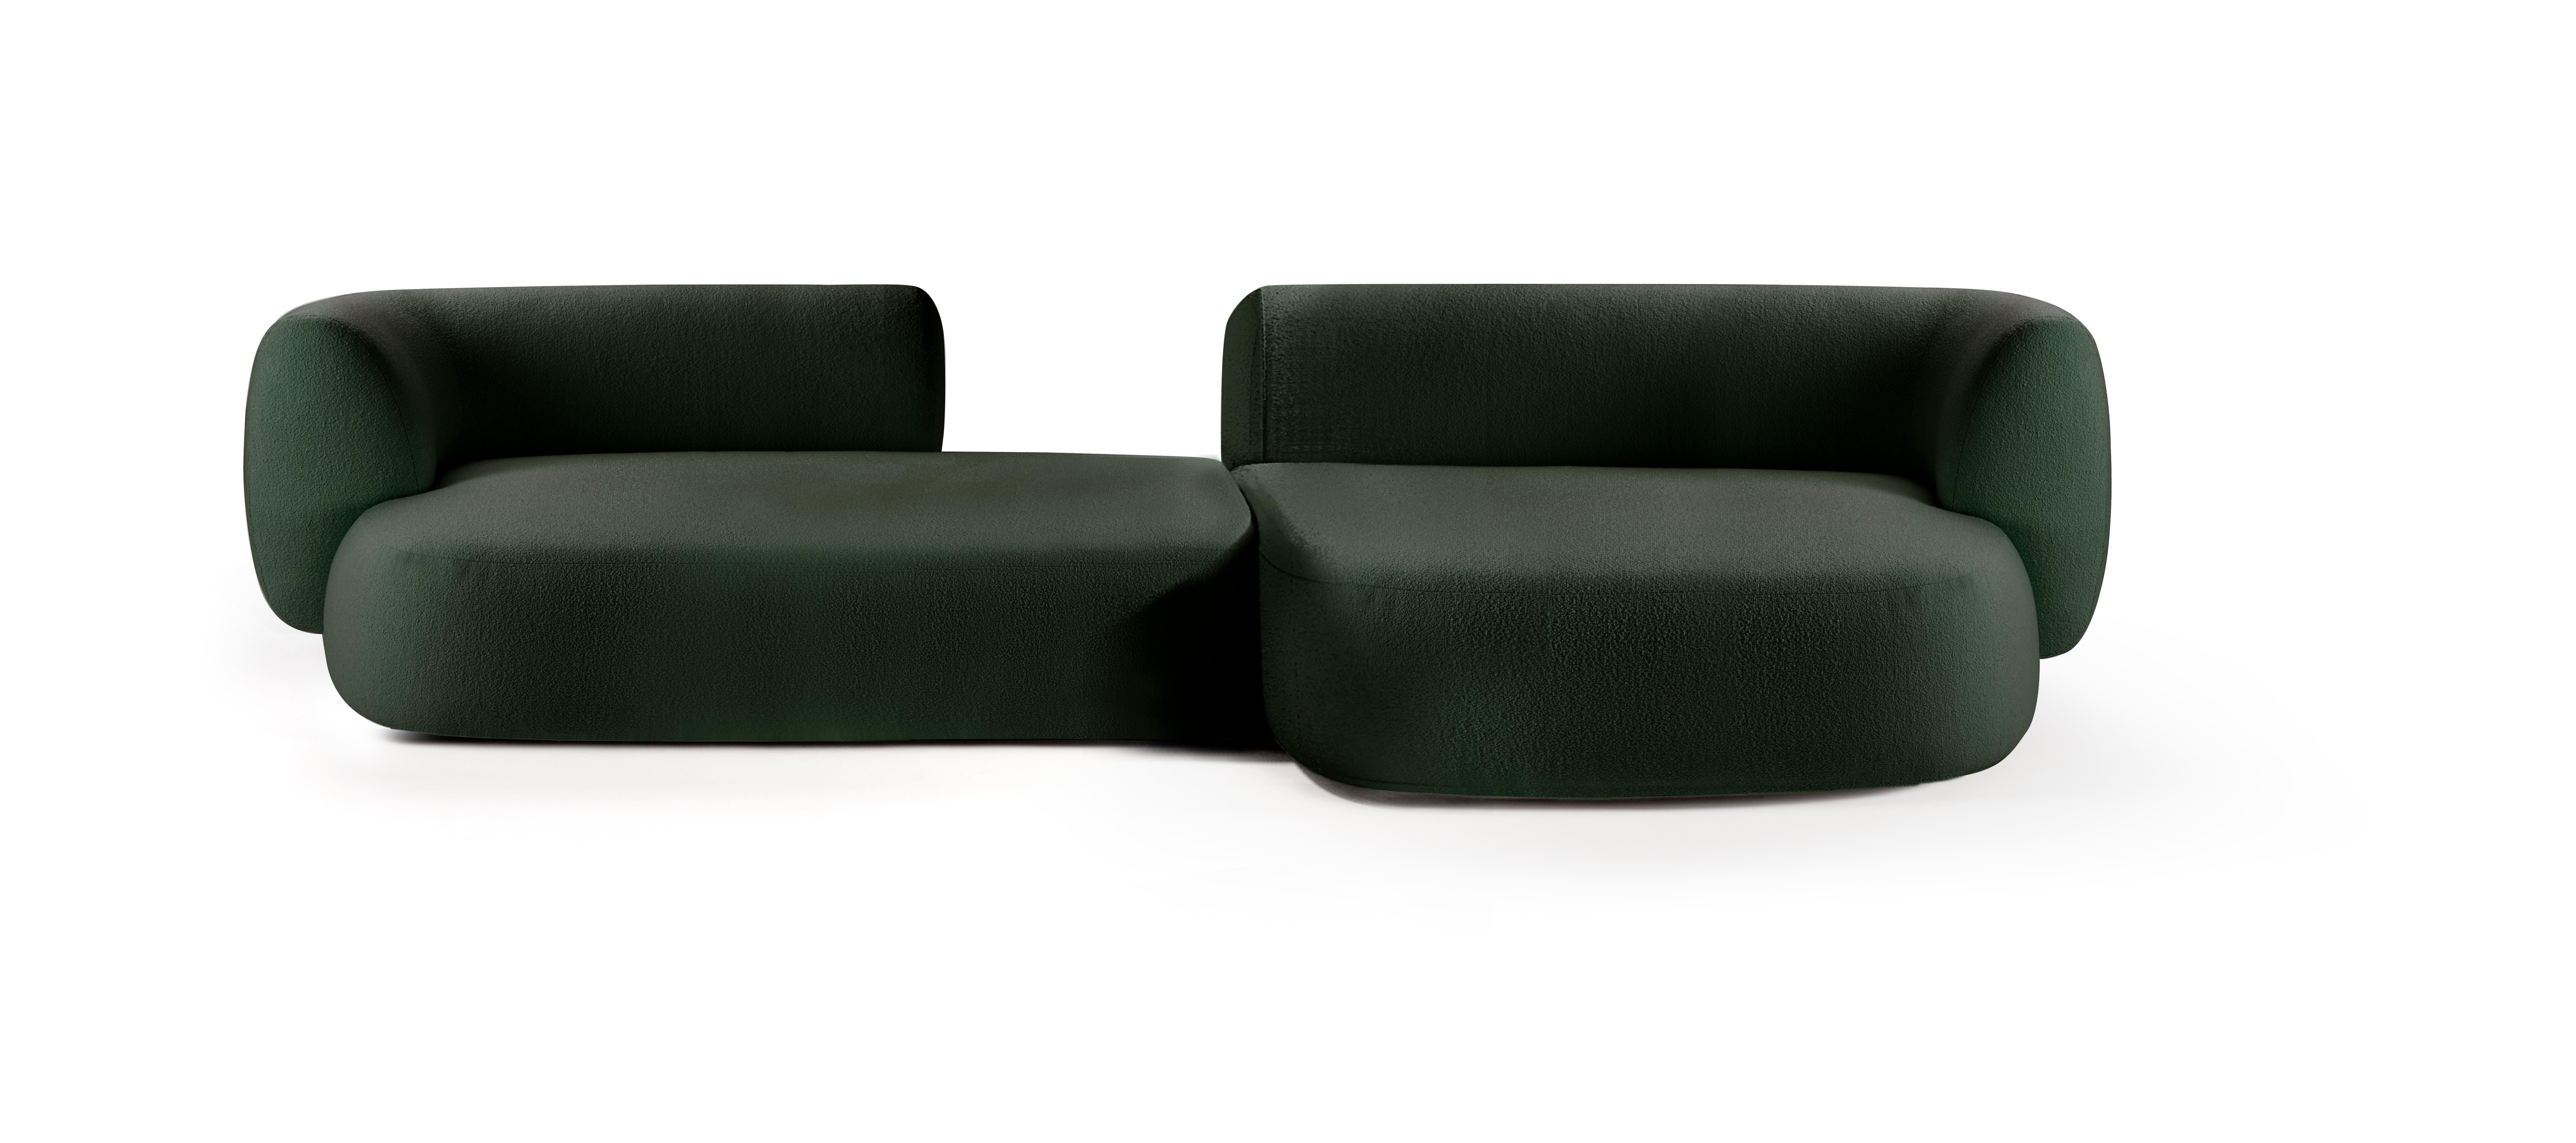 Hug modulares sofa von Collector
Abmessungen: B 330 x T 160 x H 74 cm.
DX-Anschlusselement Lückenmodul: B 180 x T 98 cm x H 74.
Chaise Longue XL Modul: B 150 x T 160 x H 74 cm.
MATERIALIEN: Stoff, massives Eichenholz.

Dieses Sofa besteht aus